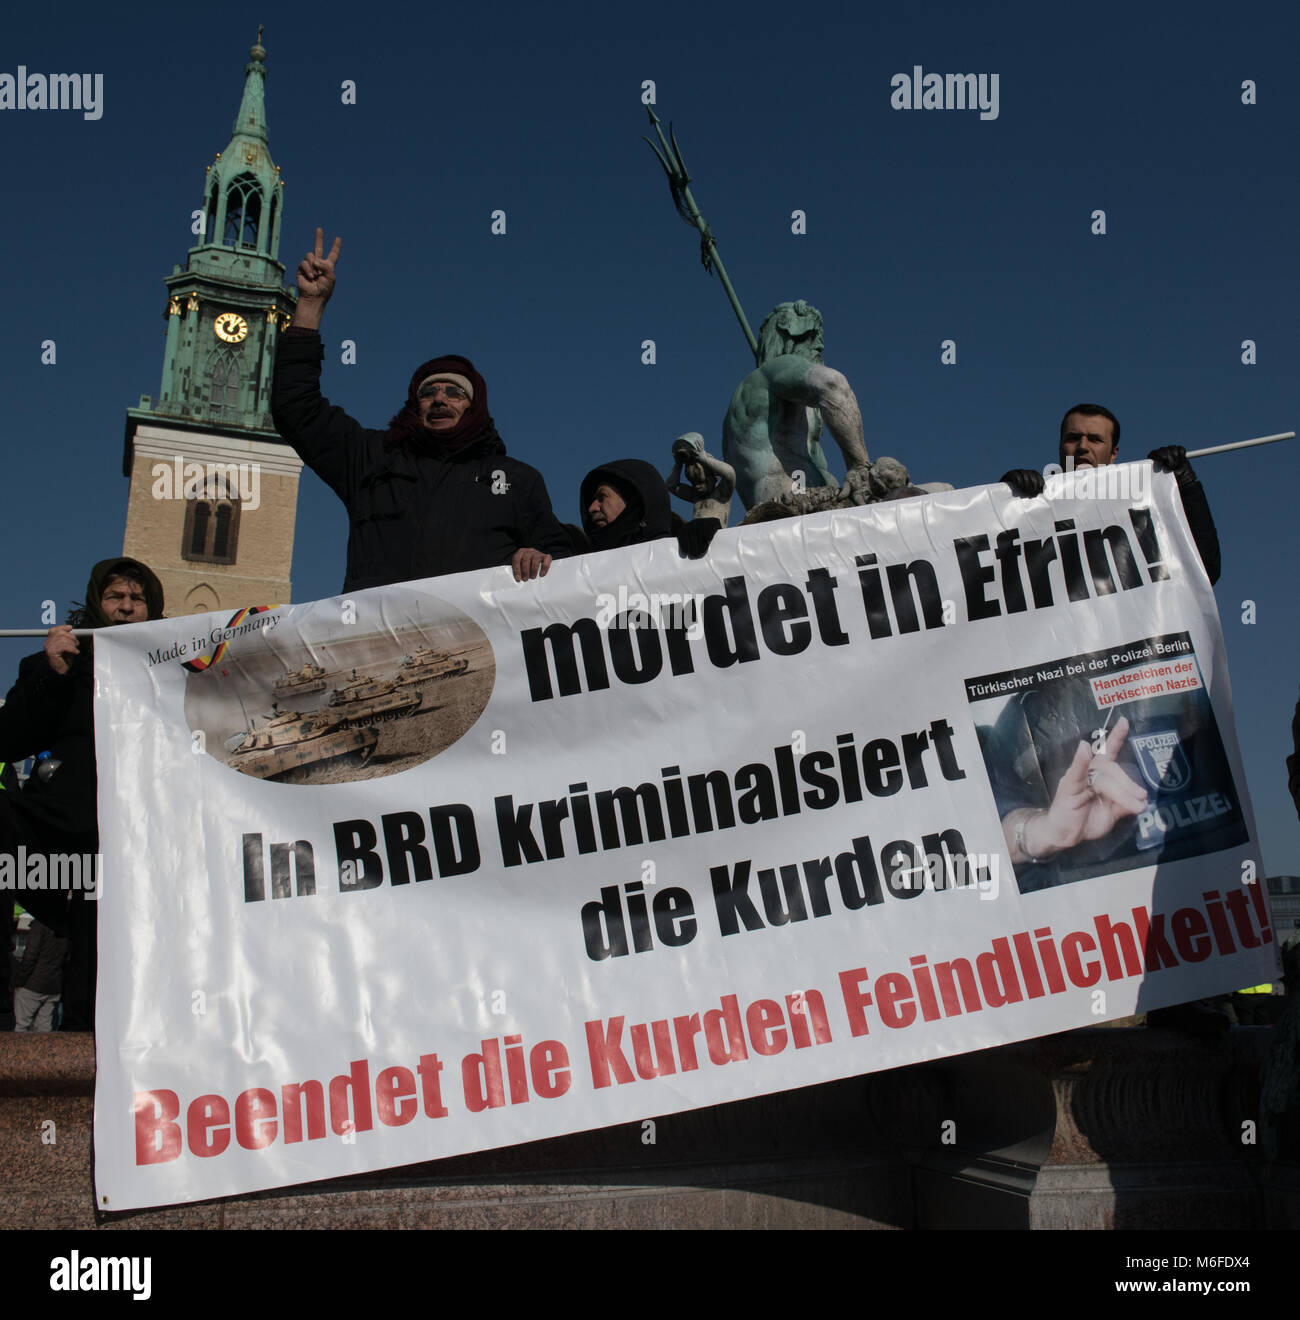 03 mars 2018, Allemagne, Berlin : les personnes participent à une manifestation déclenchée par les agressions turques dans la province syrienne d'Afrin, où la majorité de la population est le kurde. Photo : Paul Zinken/dpa Banque D'Images